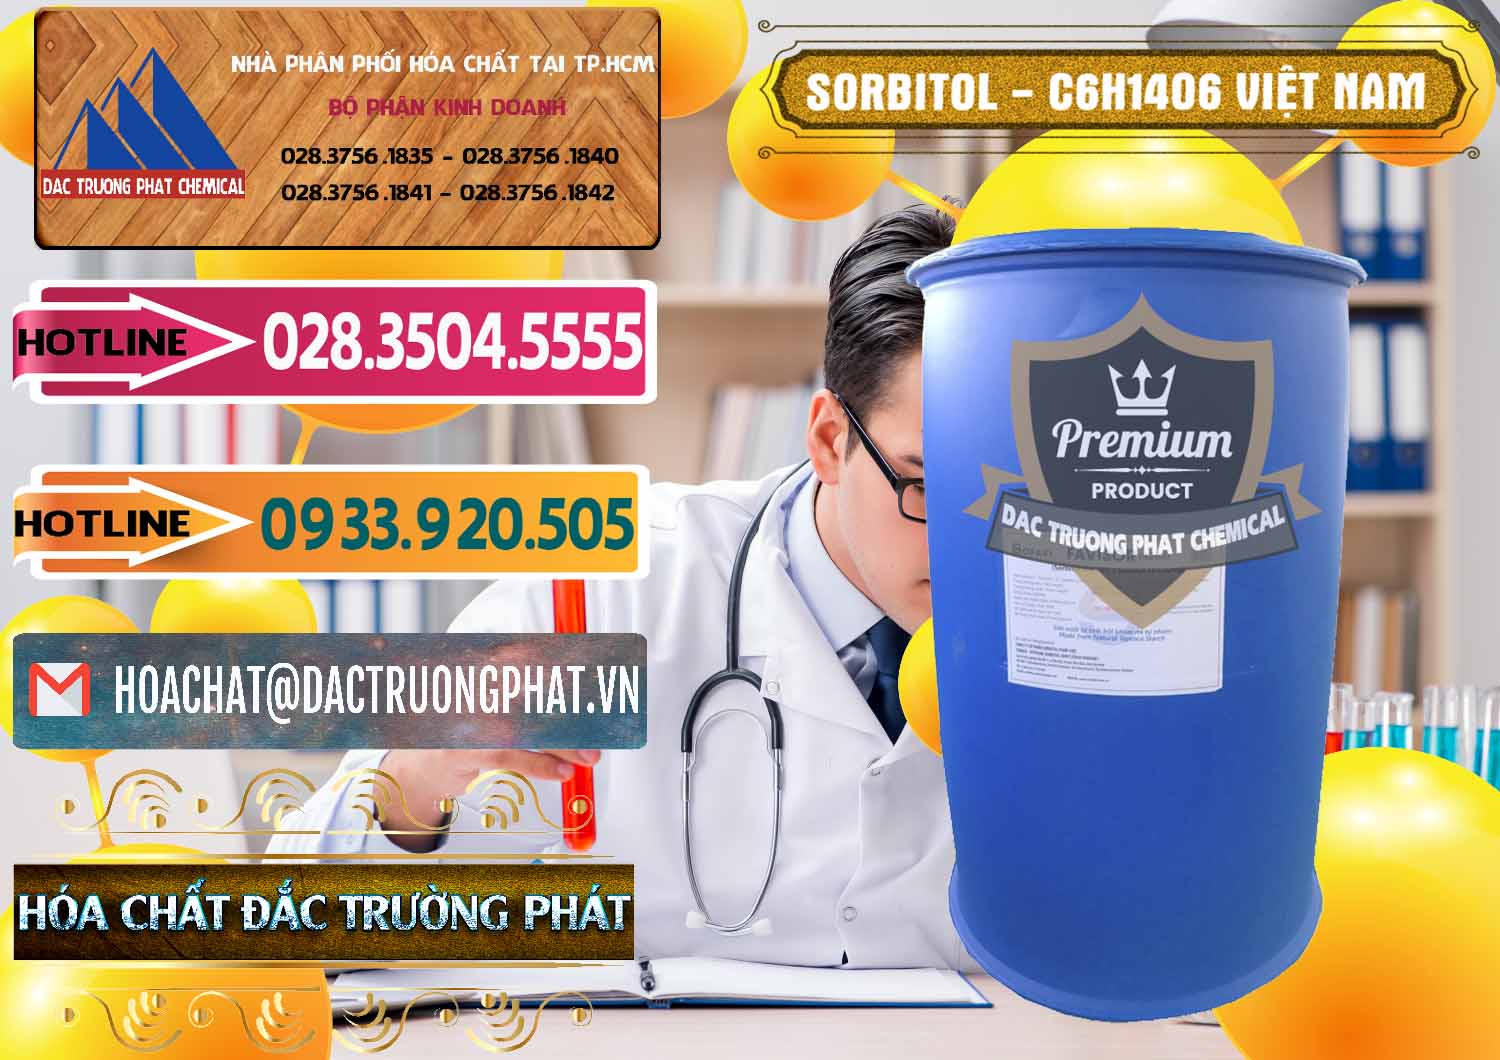 Chuyên cung cấp và bán Sorbitol - C6H14O6 Lỏng 70% Food Grade Việt Nam - 0438 - Công ty bán & cung ứng hóa chất tại TP.HCM - dactruongphat.vn